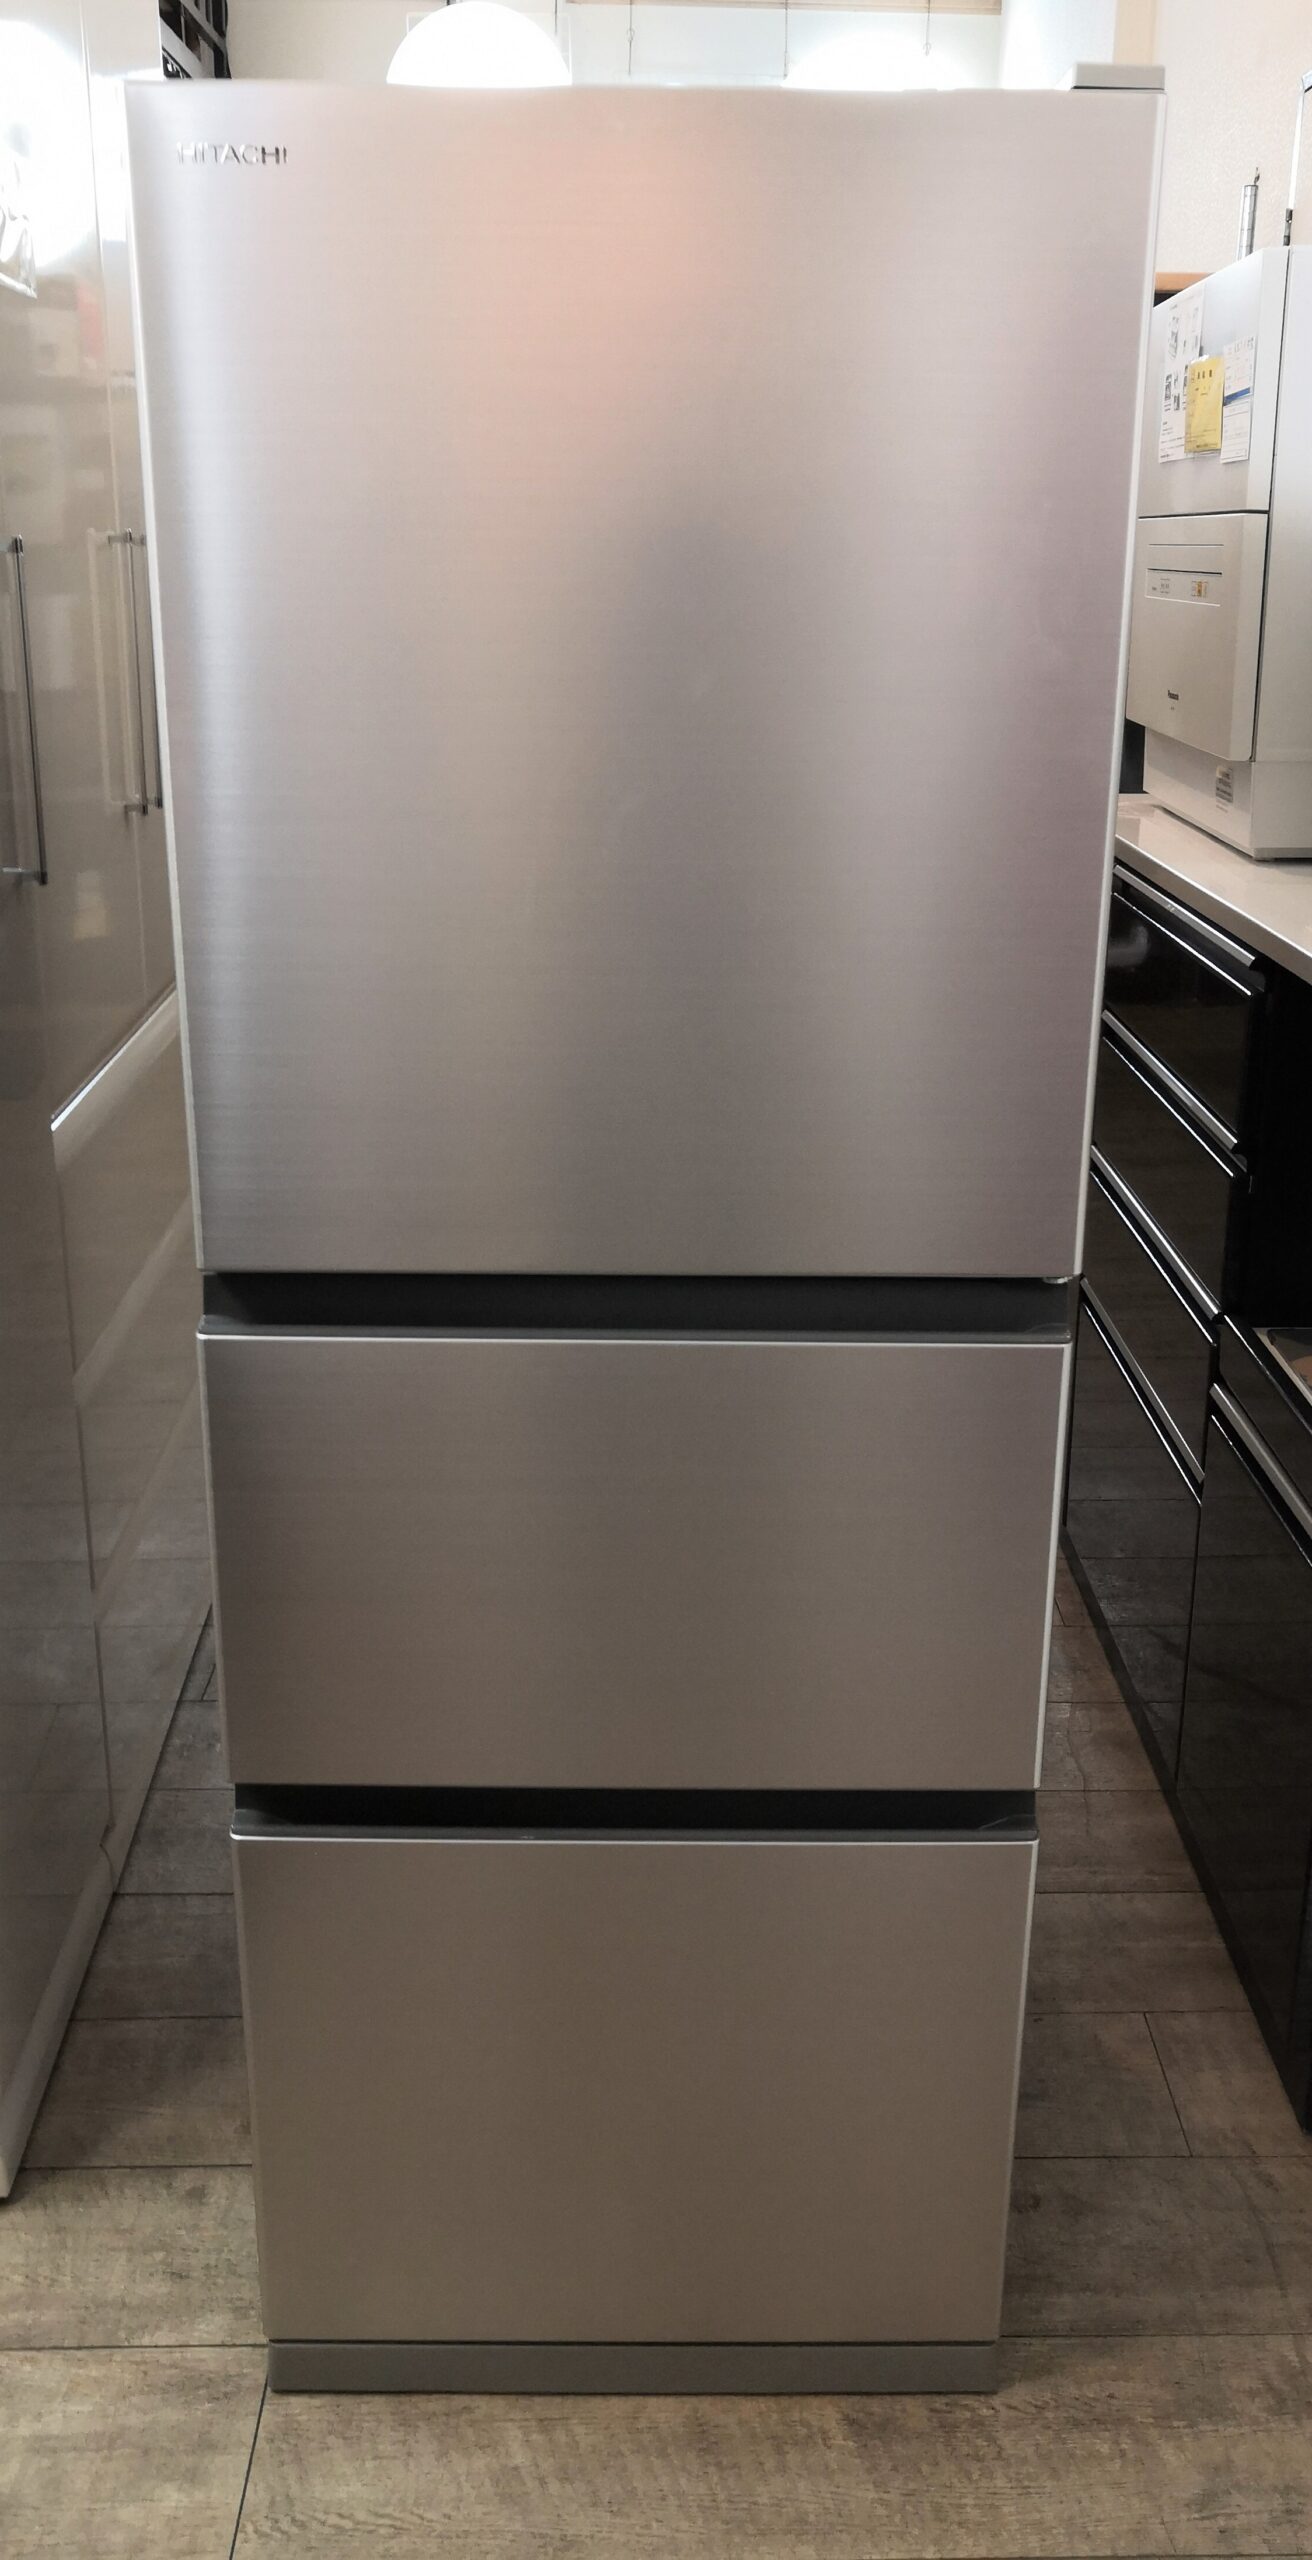 日立 R27-NV (N) 冷蔵庫 2021年製 265L - 冷蔵庫